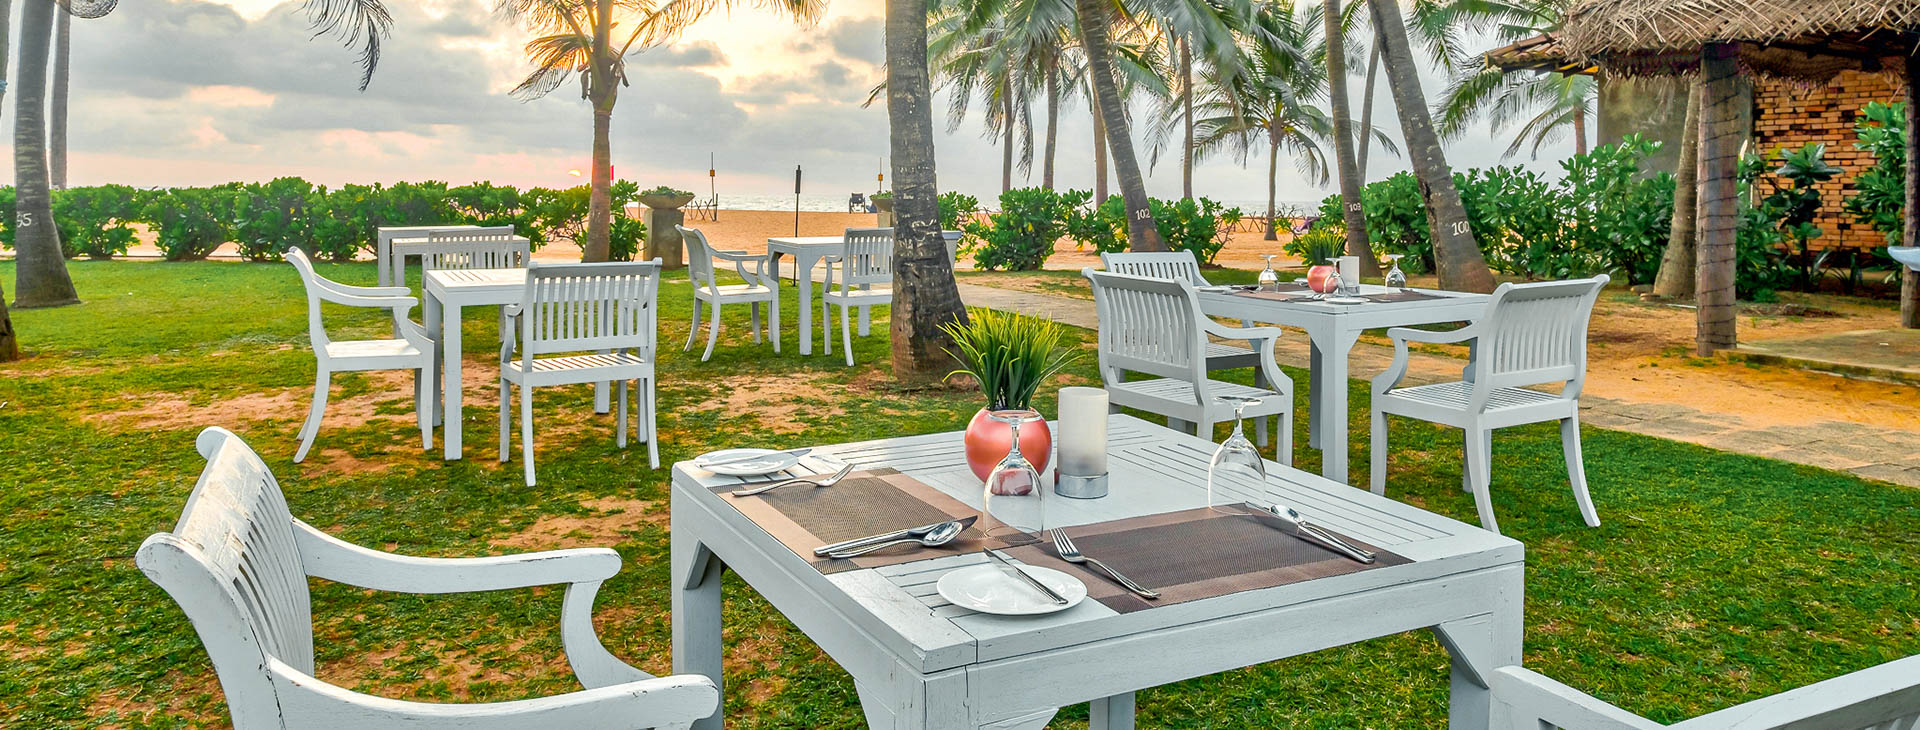 Club Hotel Dolphin - dovolená na Srí Lance Obrázek15